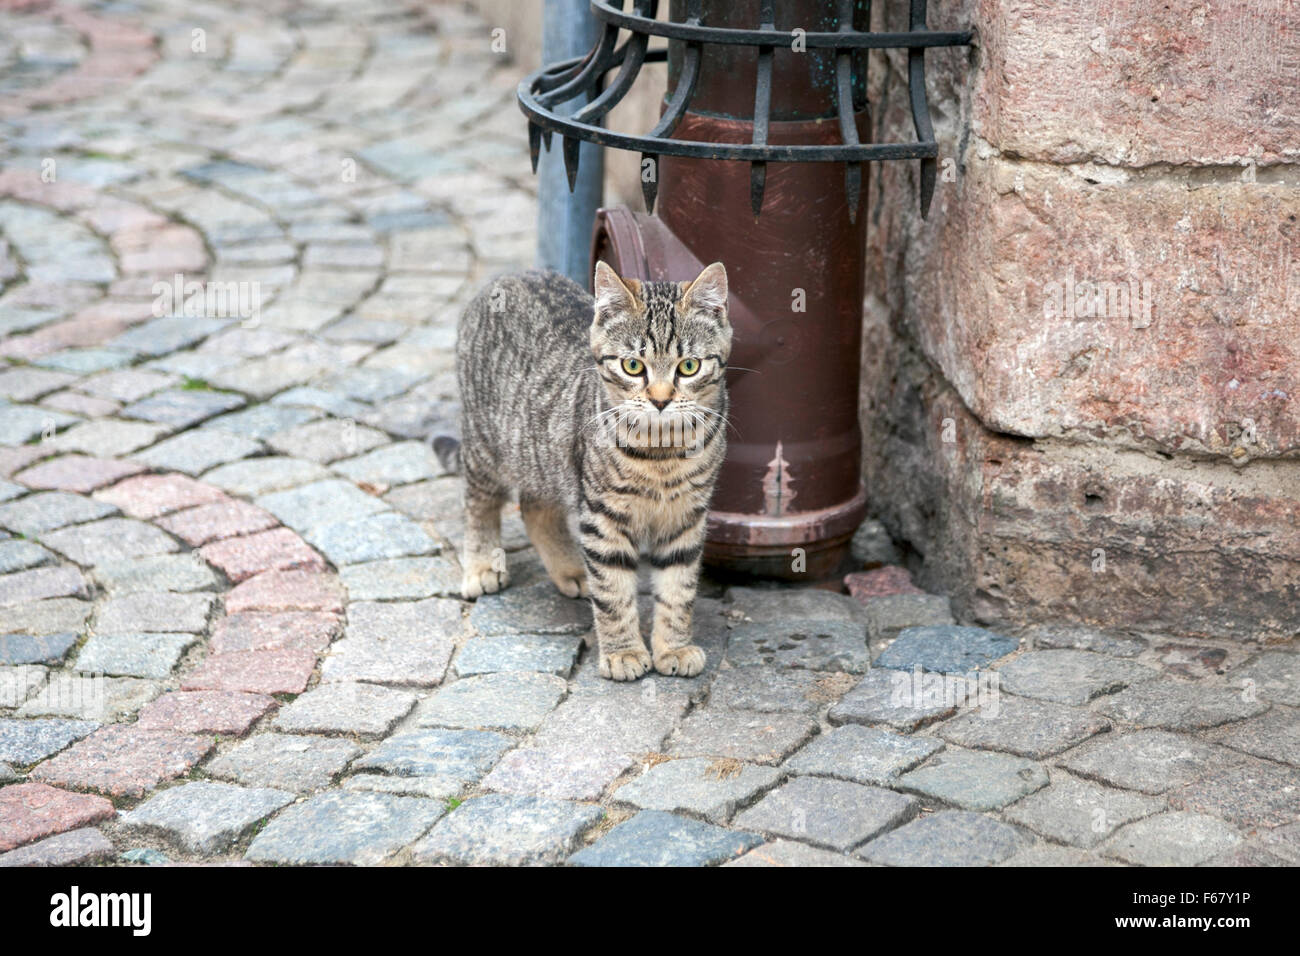 A stray cat walking around Riga's old town, Latvia Stock Photo